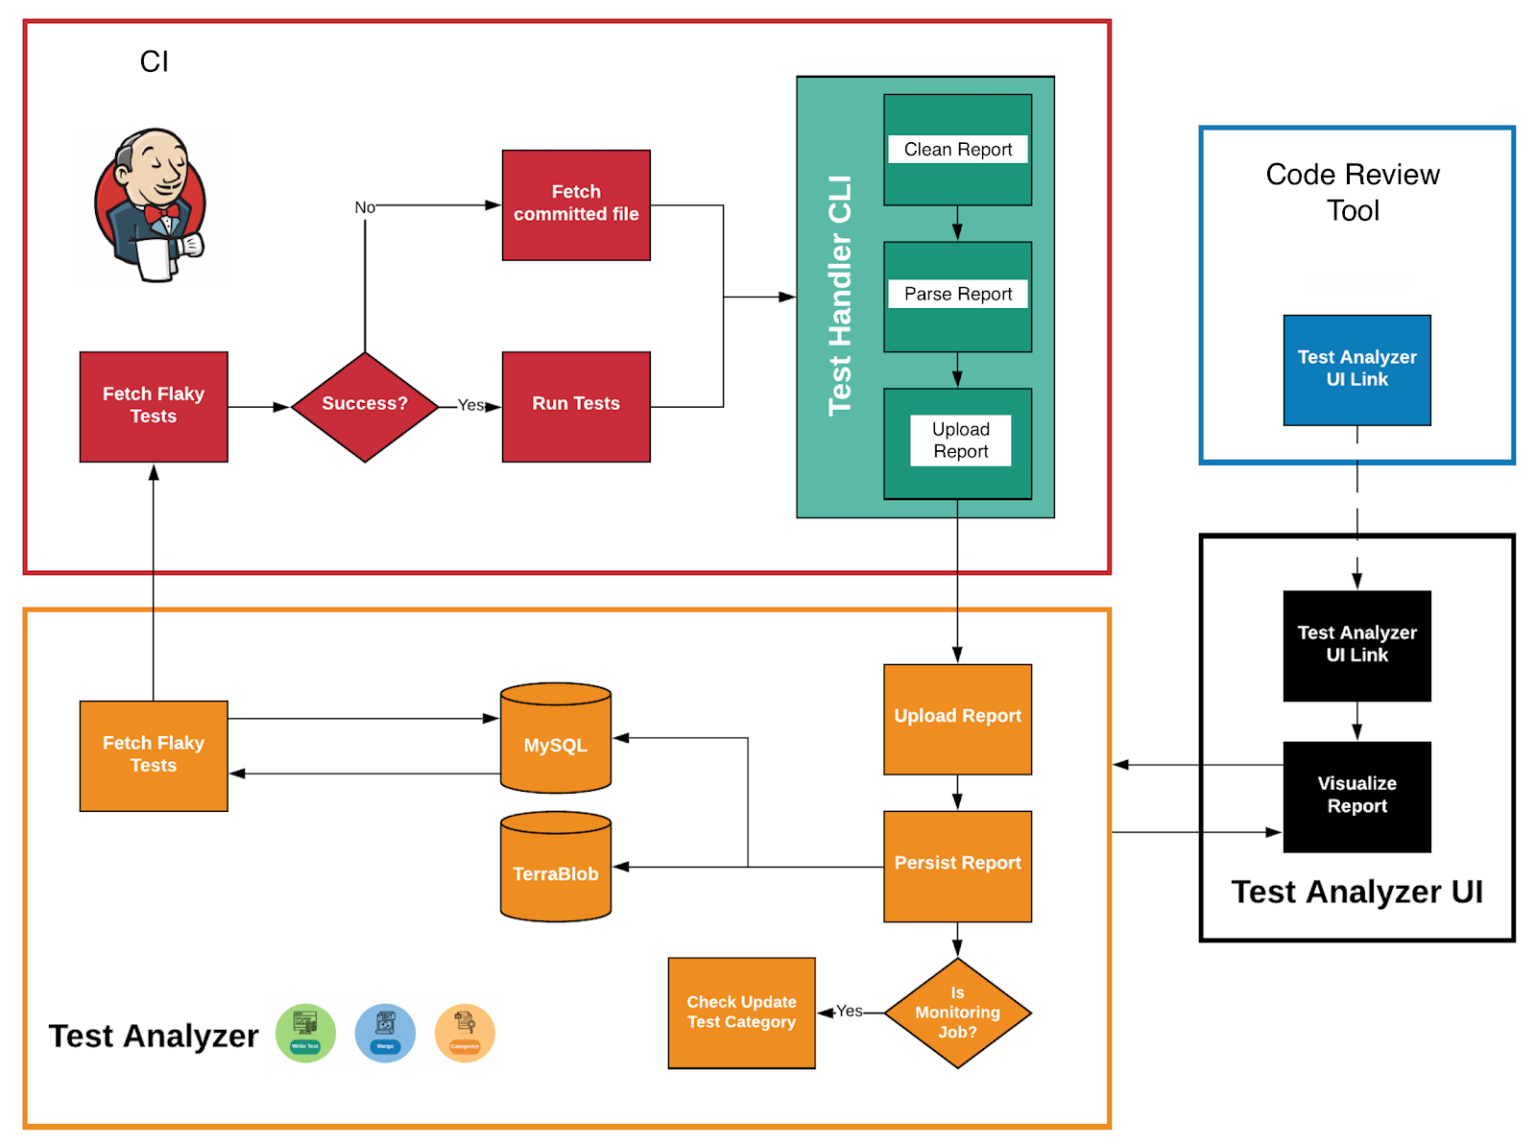 CI-система прогоняет тесты и отдает результаты в TAS через Test Handler CLI, которые хранятся в базе данных и хранилище. TAS, в свою очередь по API отдает данные для визуализации и анализа в Test Analyzer UI, который интегрируется с инструментом для код ревью.